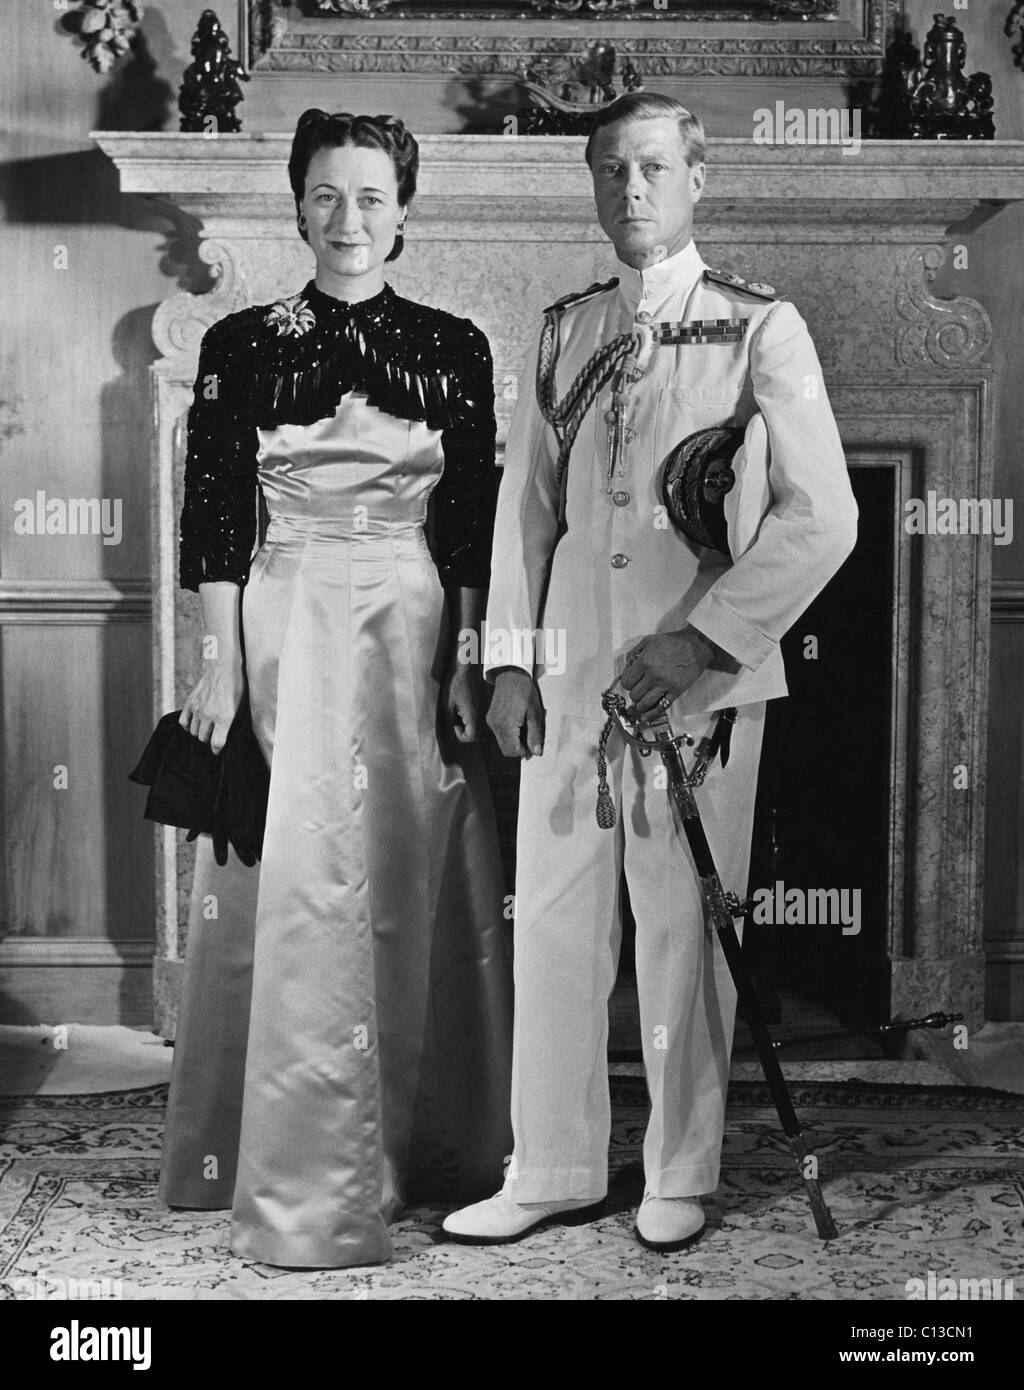 La Duchesse de Windsor, Wallis Simpson et le Prince Edward, duc de Windsor, fin 1930. Banque D'Images